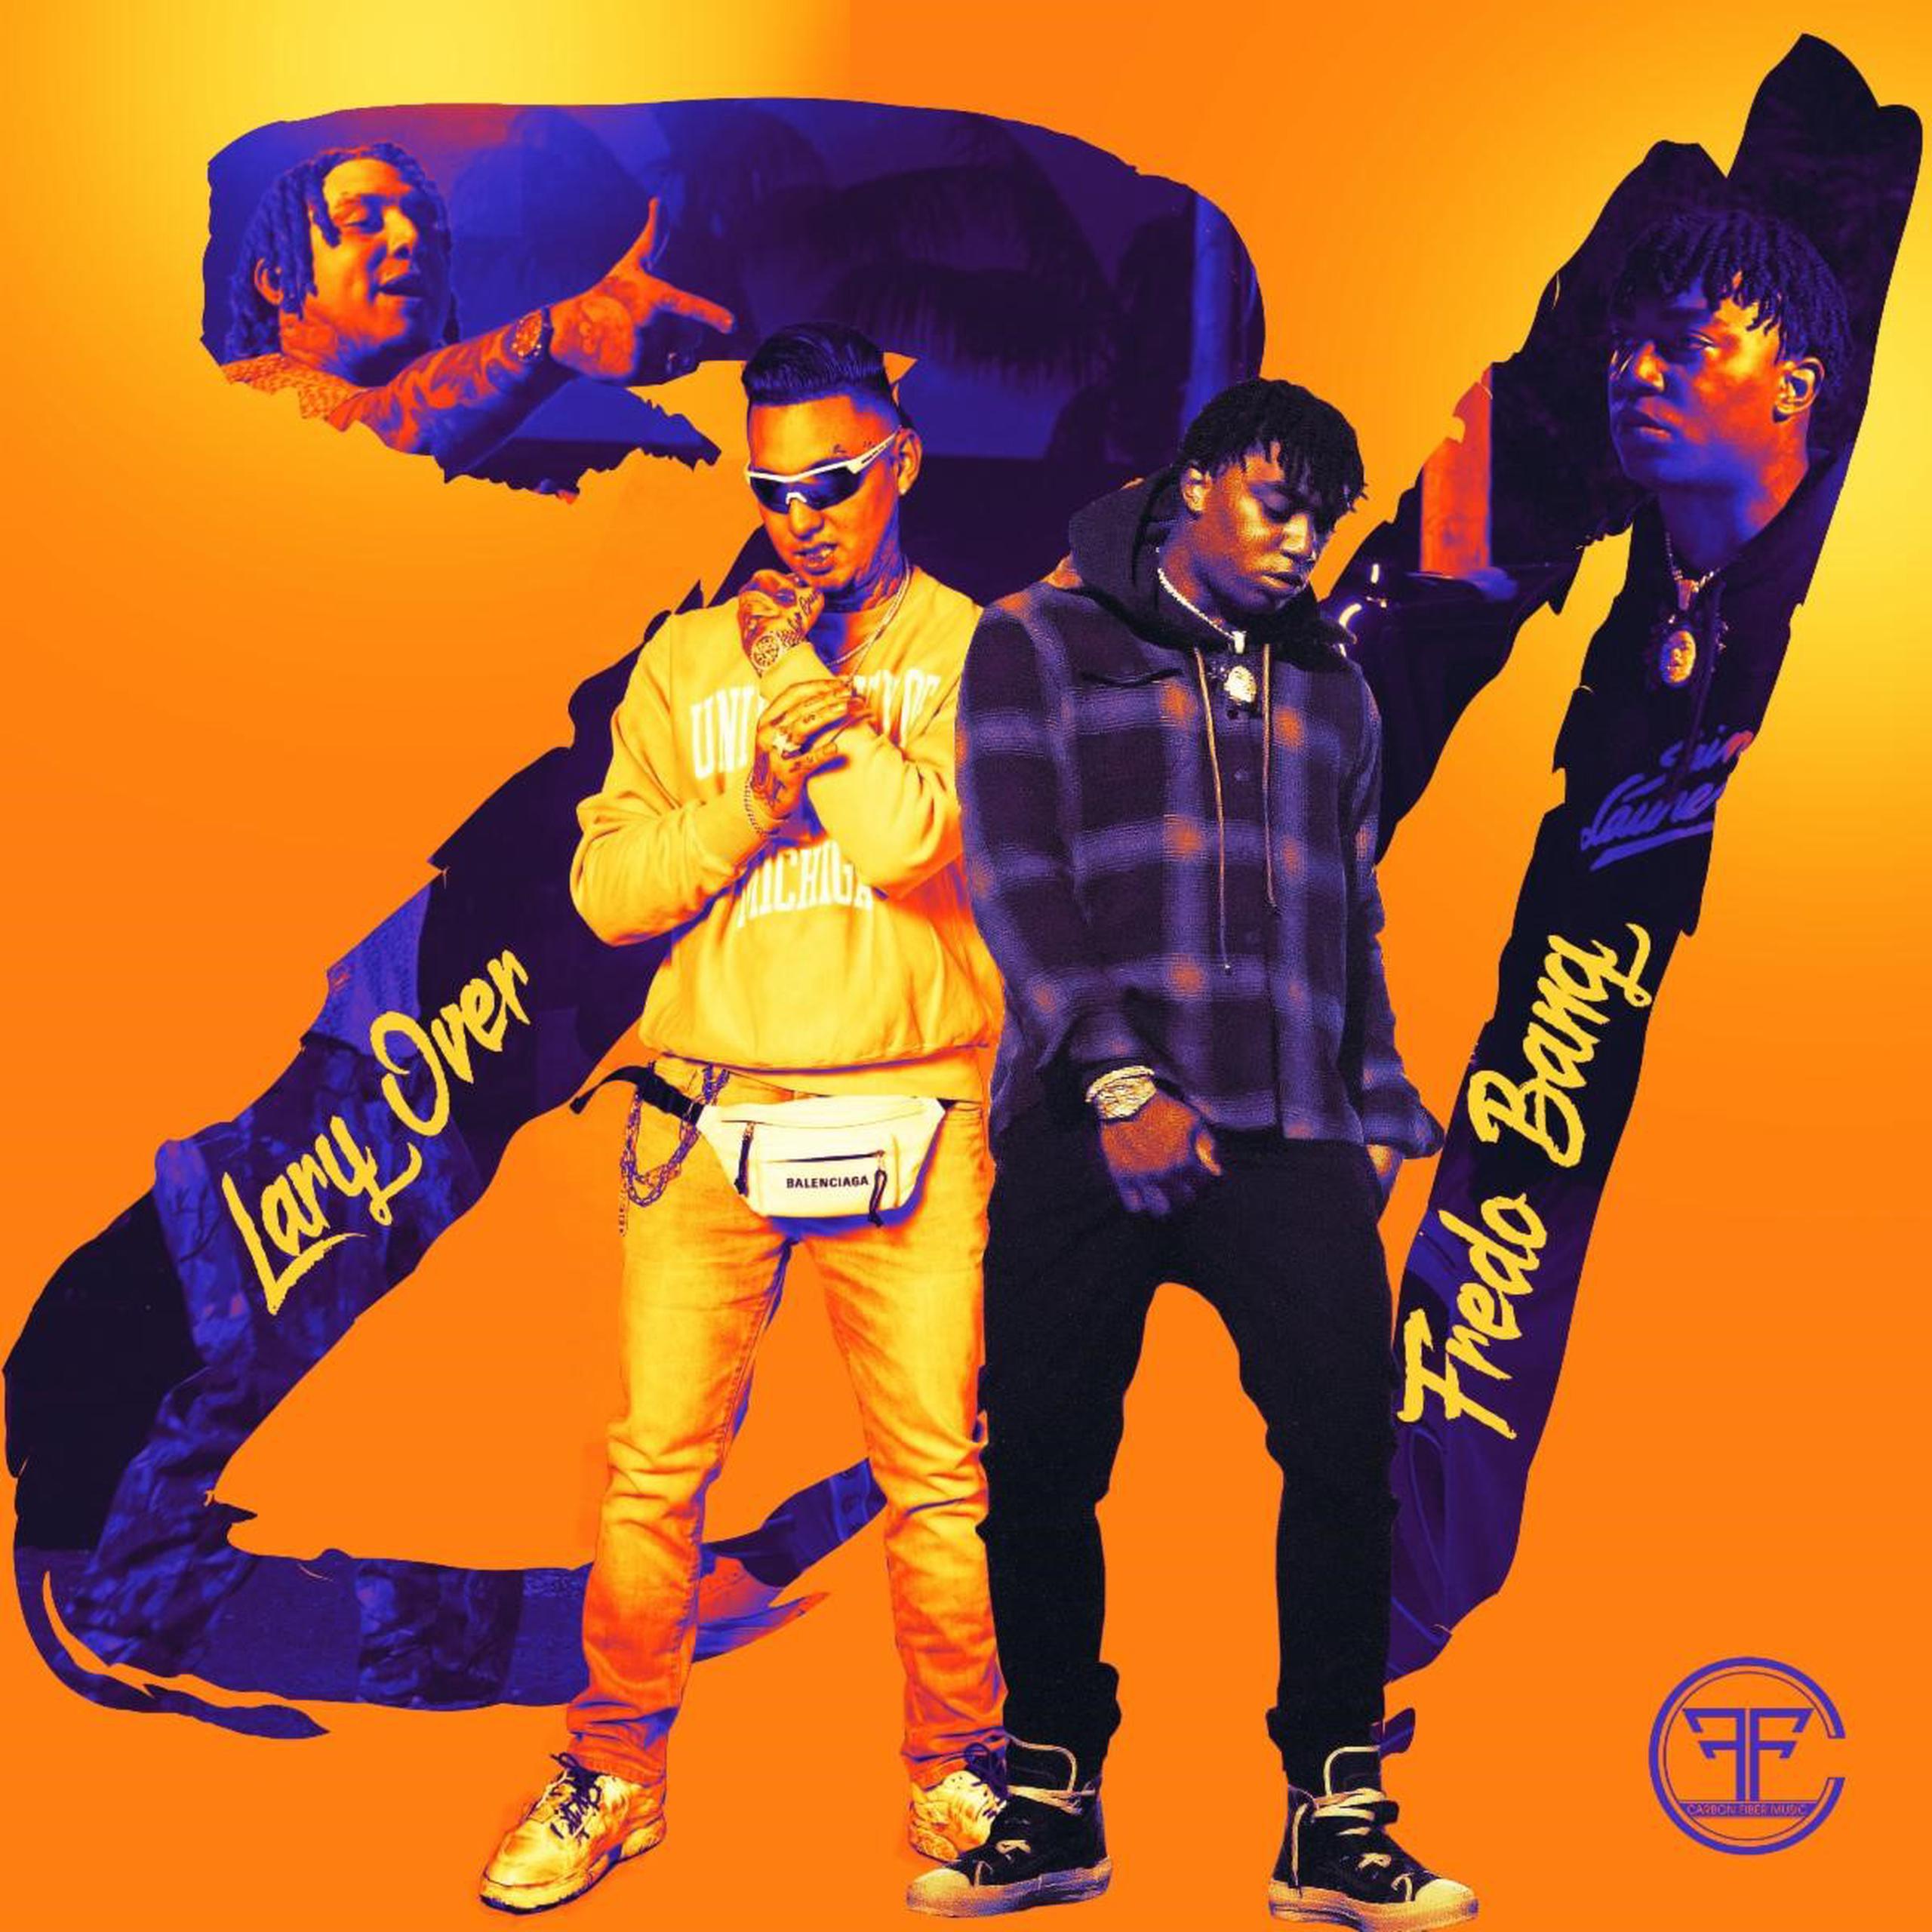 El nuevo tema muestra influencias del trap sobre una base de hip hop.